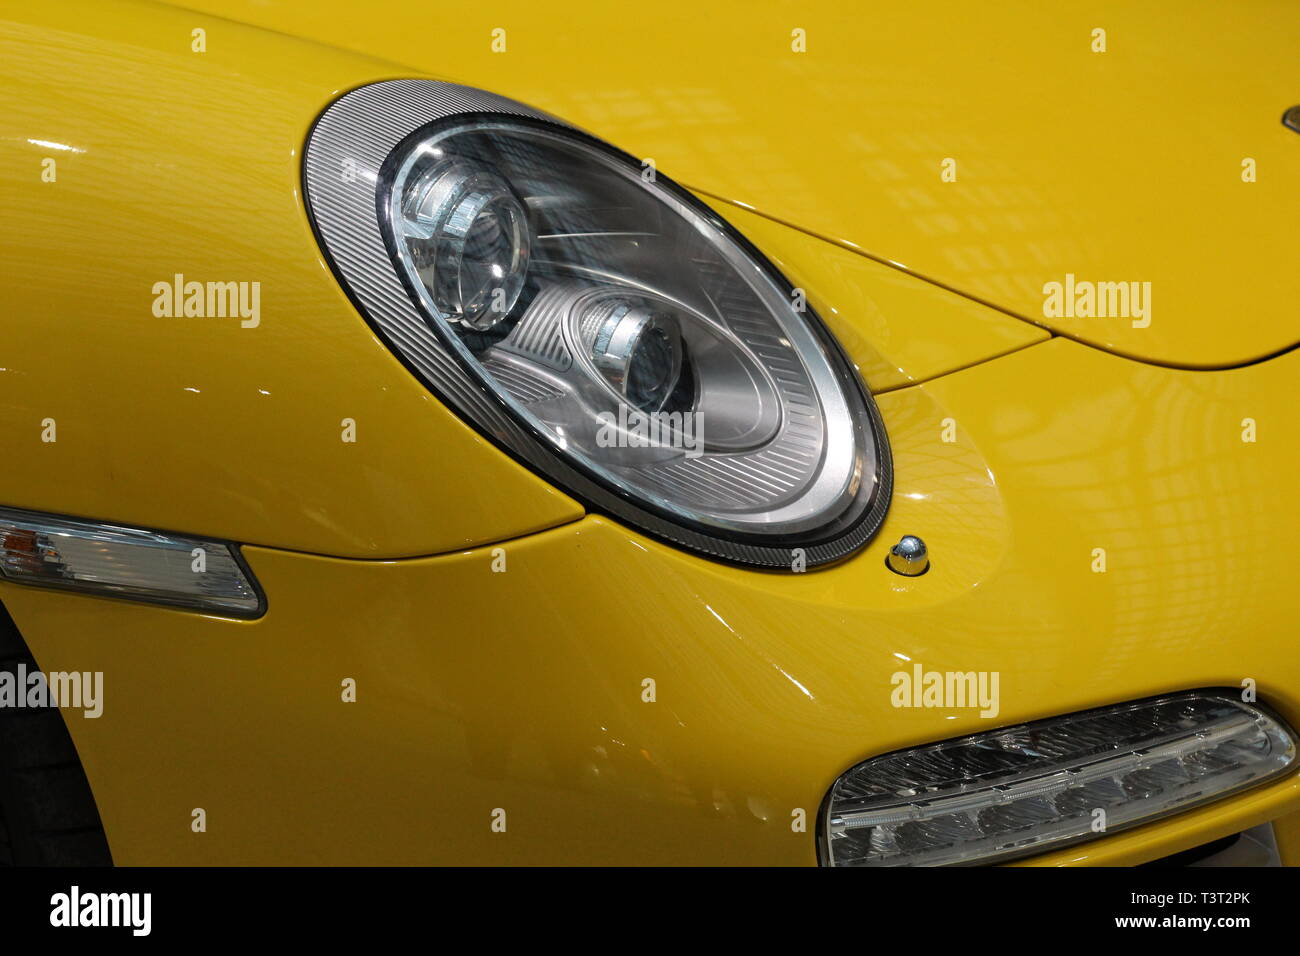 Gelber Sportwagen. Maschine - Fahrzeug. Von der gelben Auto Scheinwerfer.  Design. Abdeckung, Zeitschriften, Auto blogs Stockfotografie - Alamy